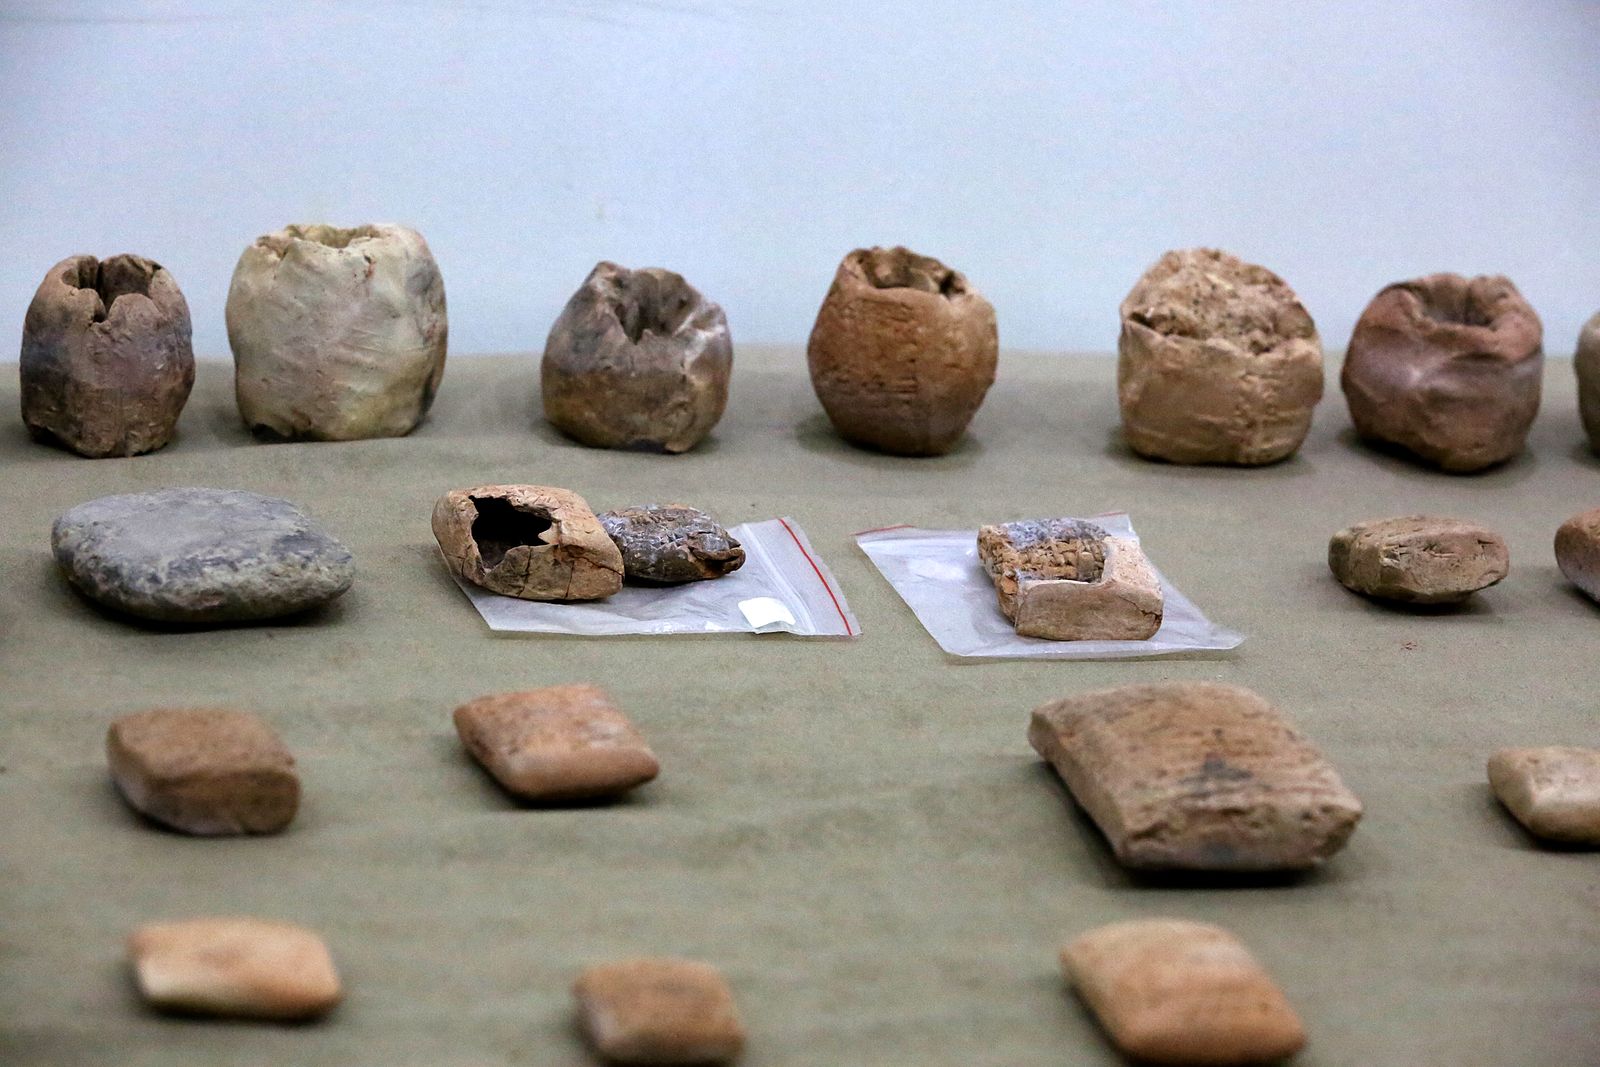 آثار تم  استعادتها للعراق، وتعرض حالياً في المتحف الوطني العراقي بالعاصمة بغداد (صورة أرشيفية) - AFP